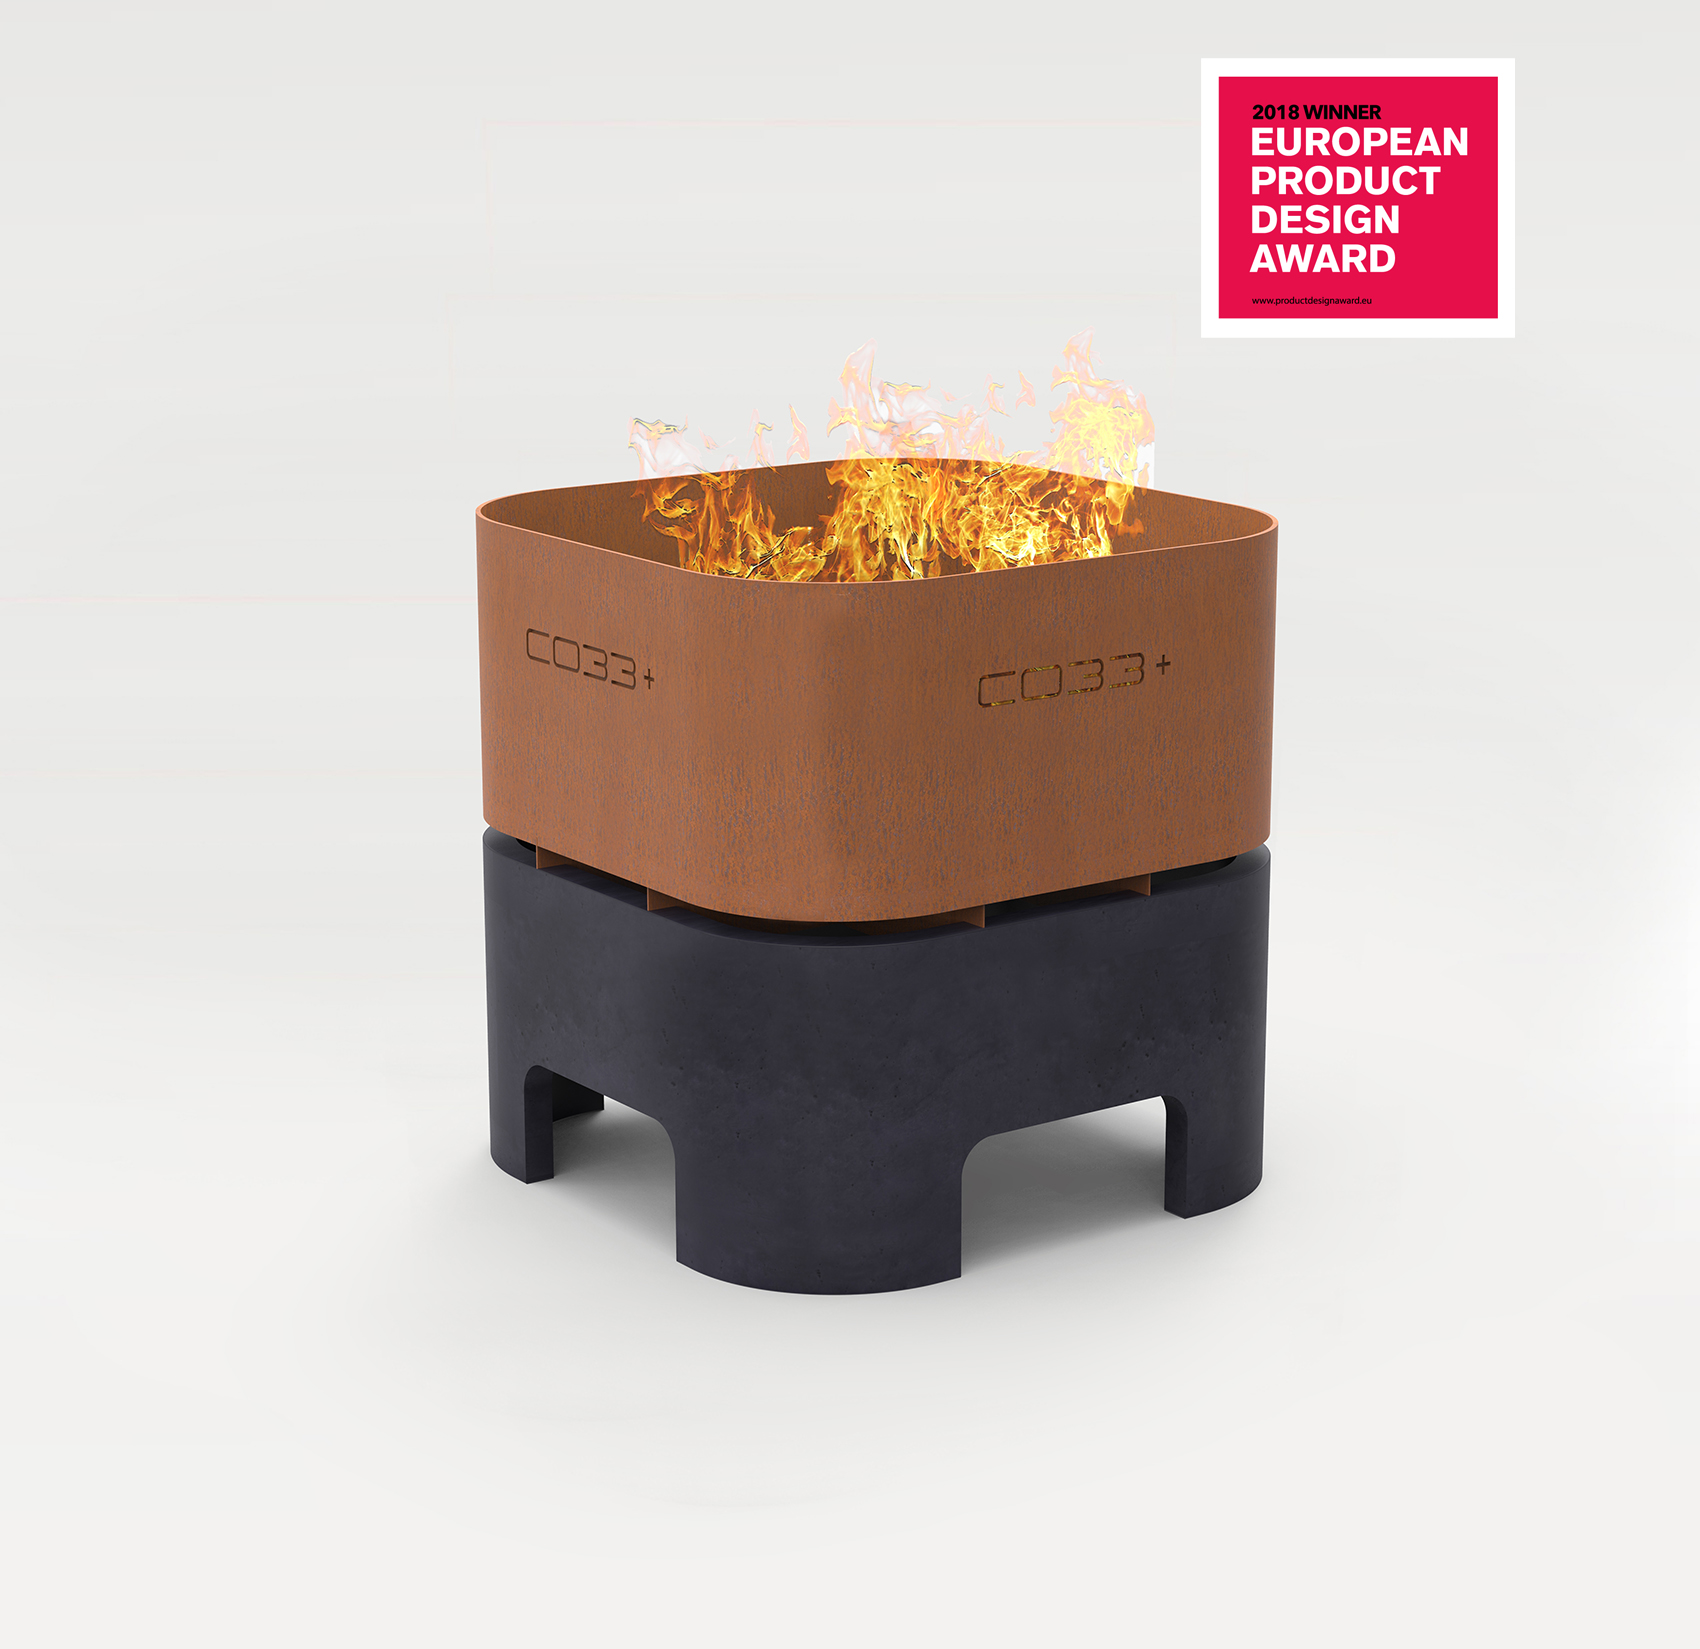 CO33 Betonmöbel Feuerschale aus Beton anthrazit und Cortenstahl, Design-Award in Gold